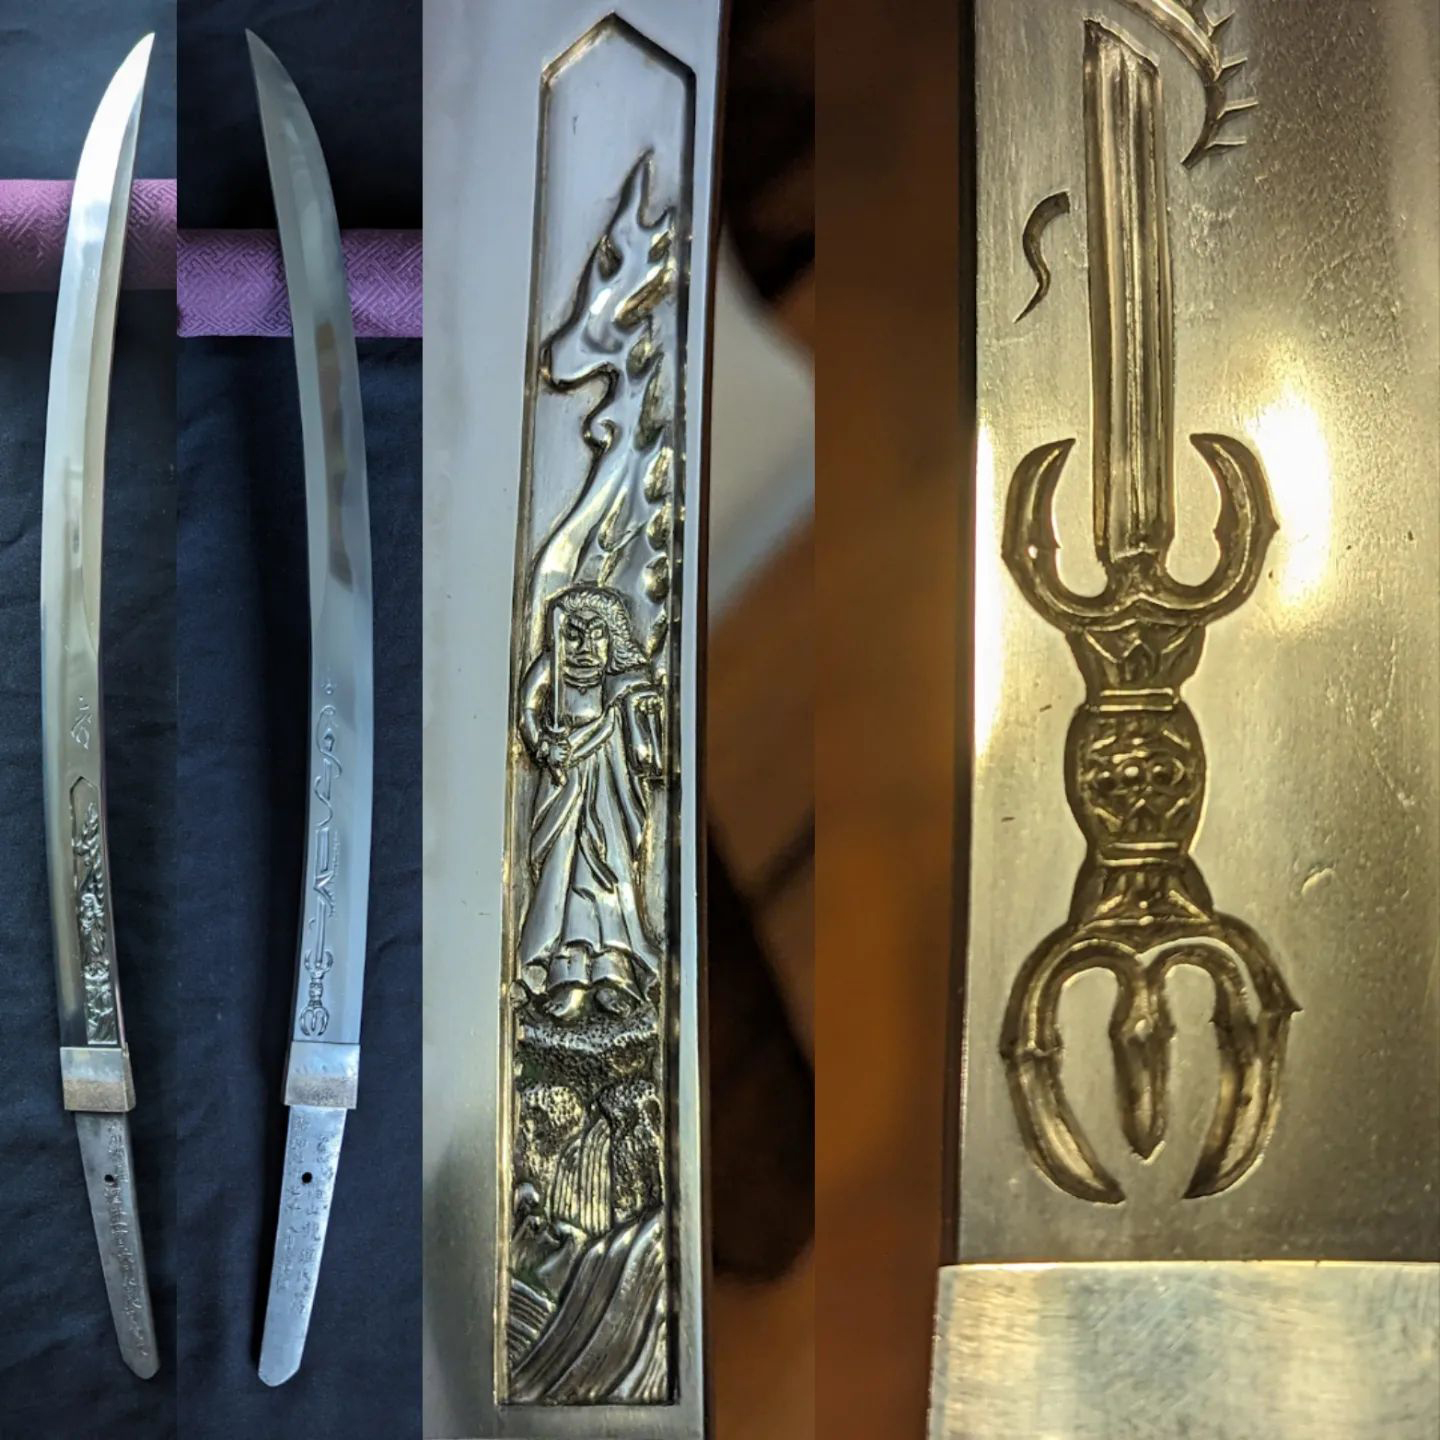 Sakai Ikkansai Shigemasa wakizashi - Swords of Japan